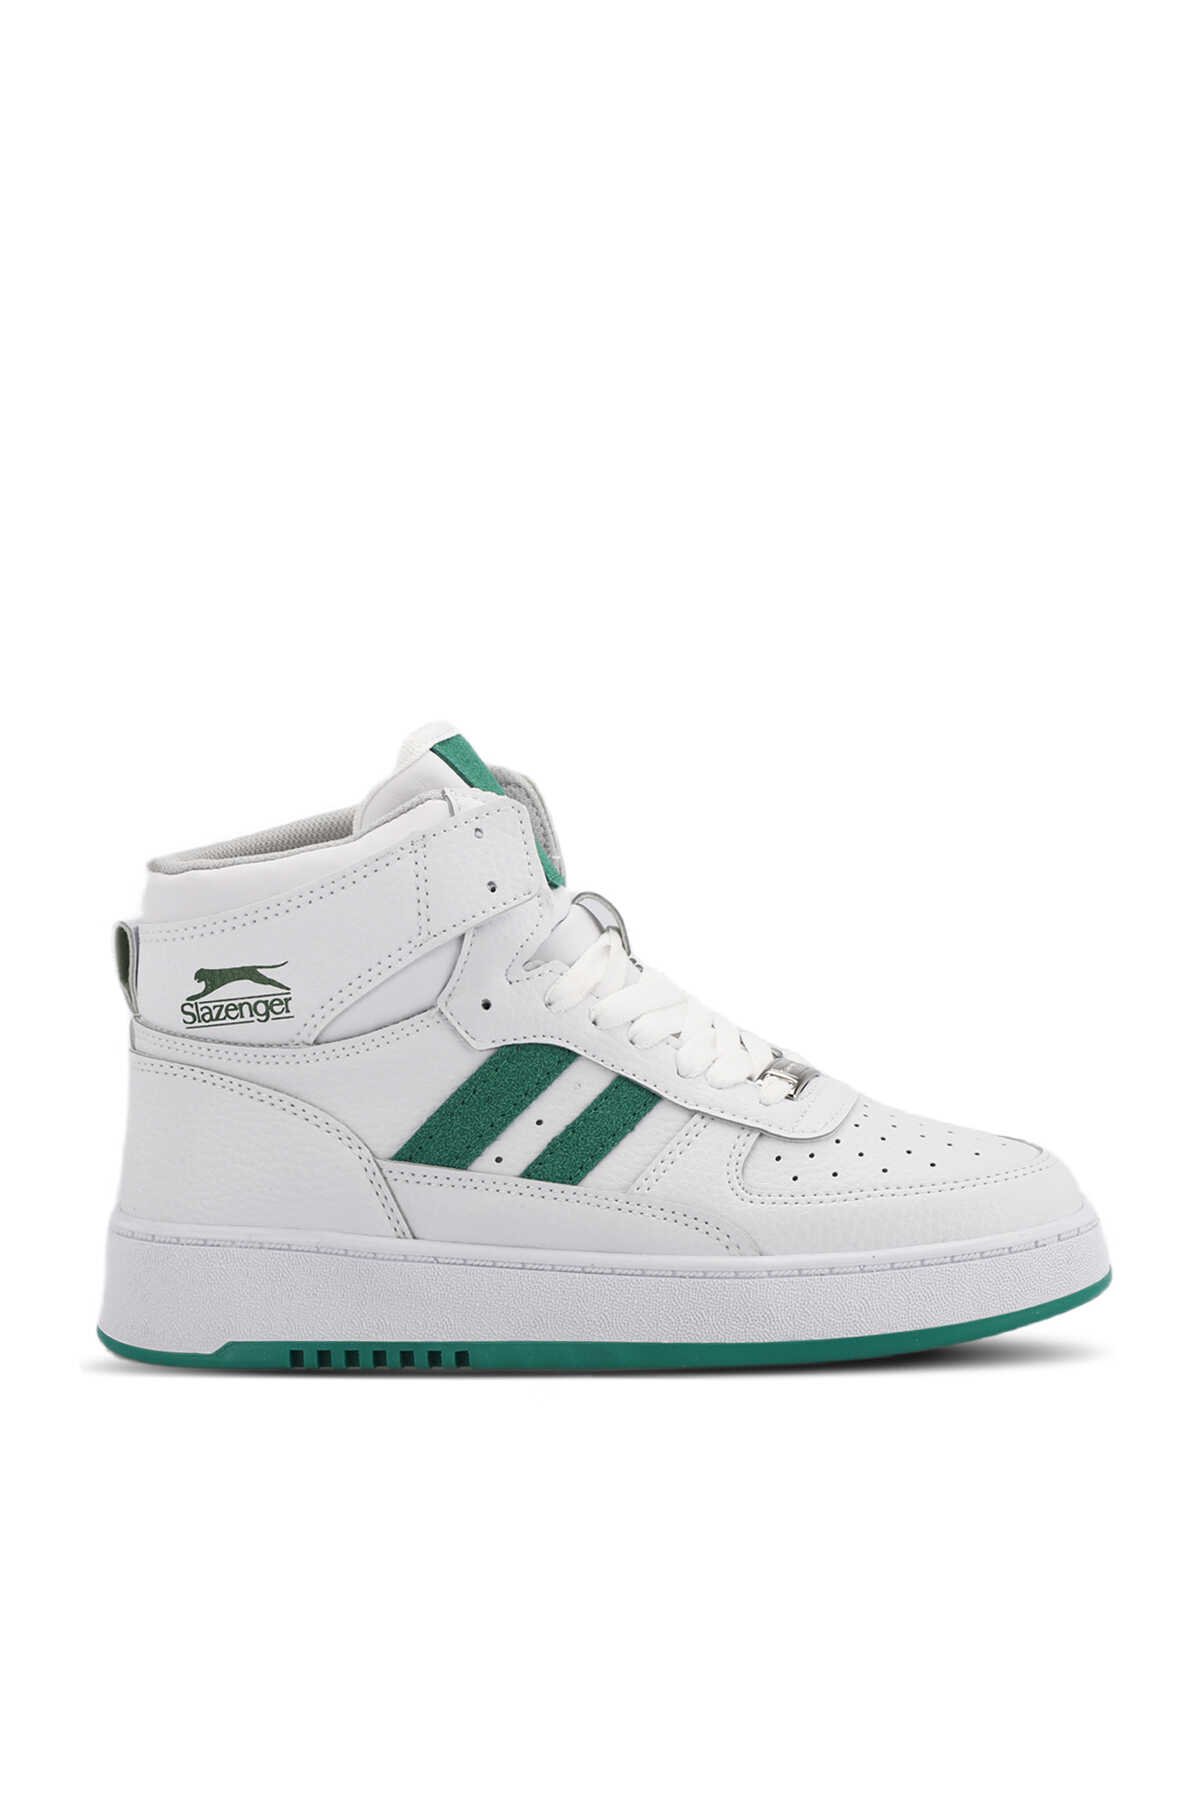 Slazenger - Slazenger DAPHNE HIGH Sneaker Kadın Ayakkabı Beyaz / Yeşil